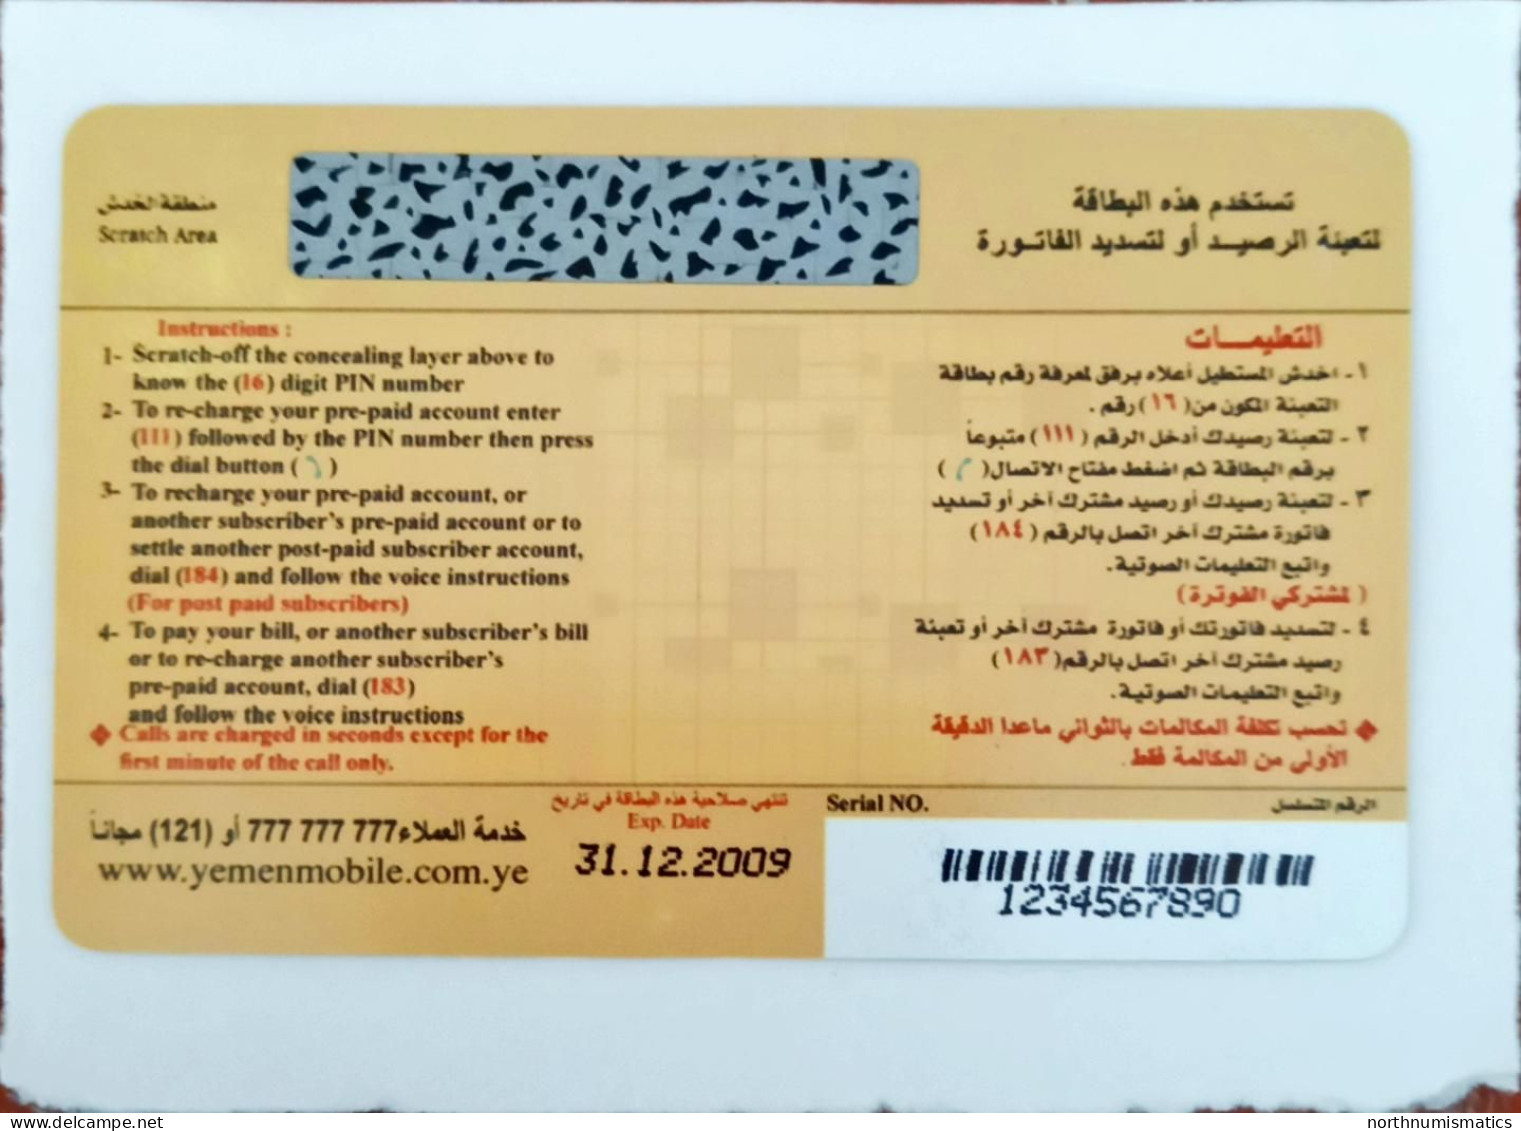 Yemen Mobile 1000 Y.R  Prepaid İnternational Calling  Sample  Phone Card Unused - Lots - Collections